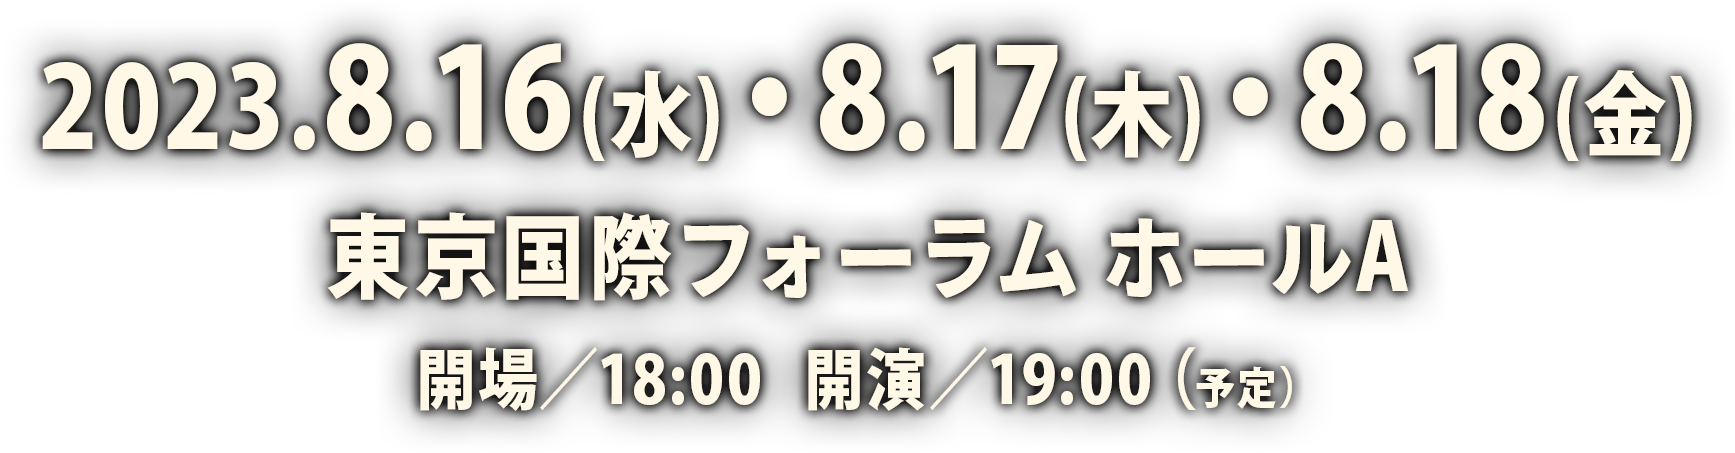 2022.8.16(水)・8.17(木)・8.18(金) 東京国際フォーラム ホールA